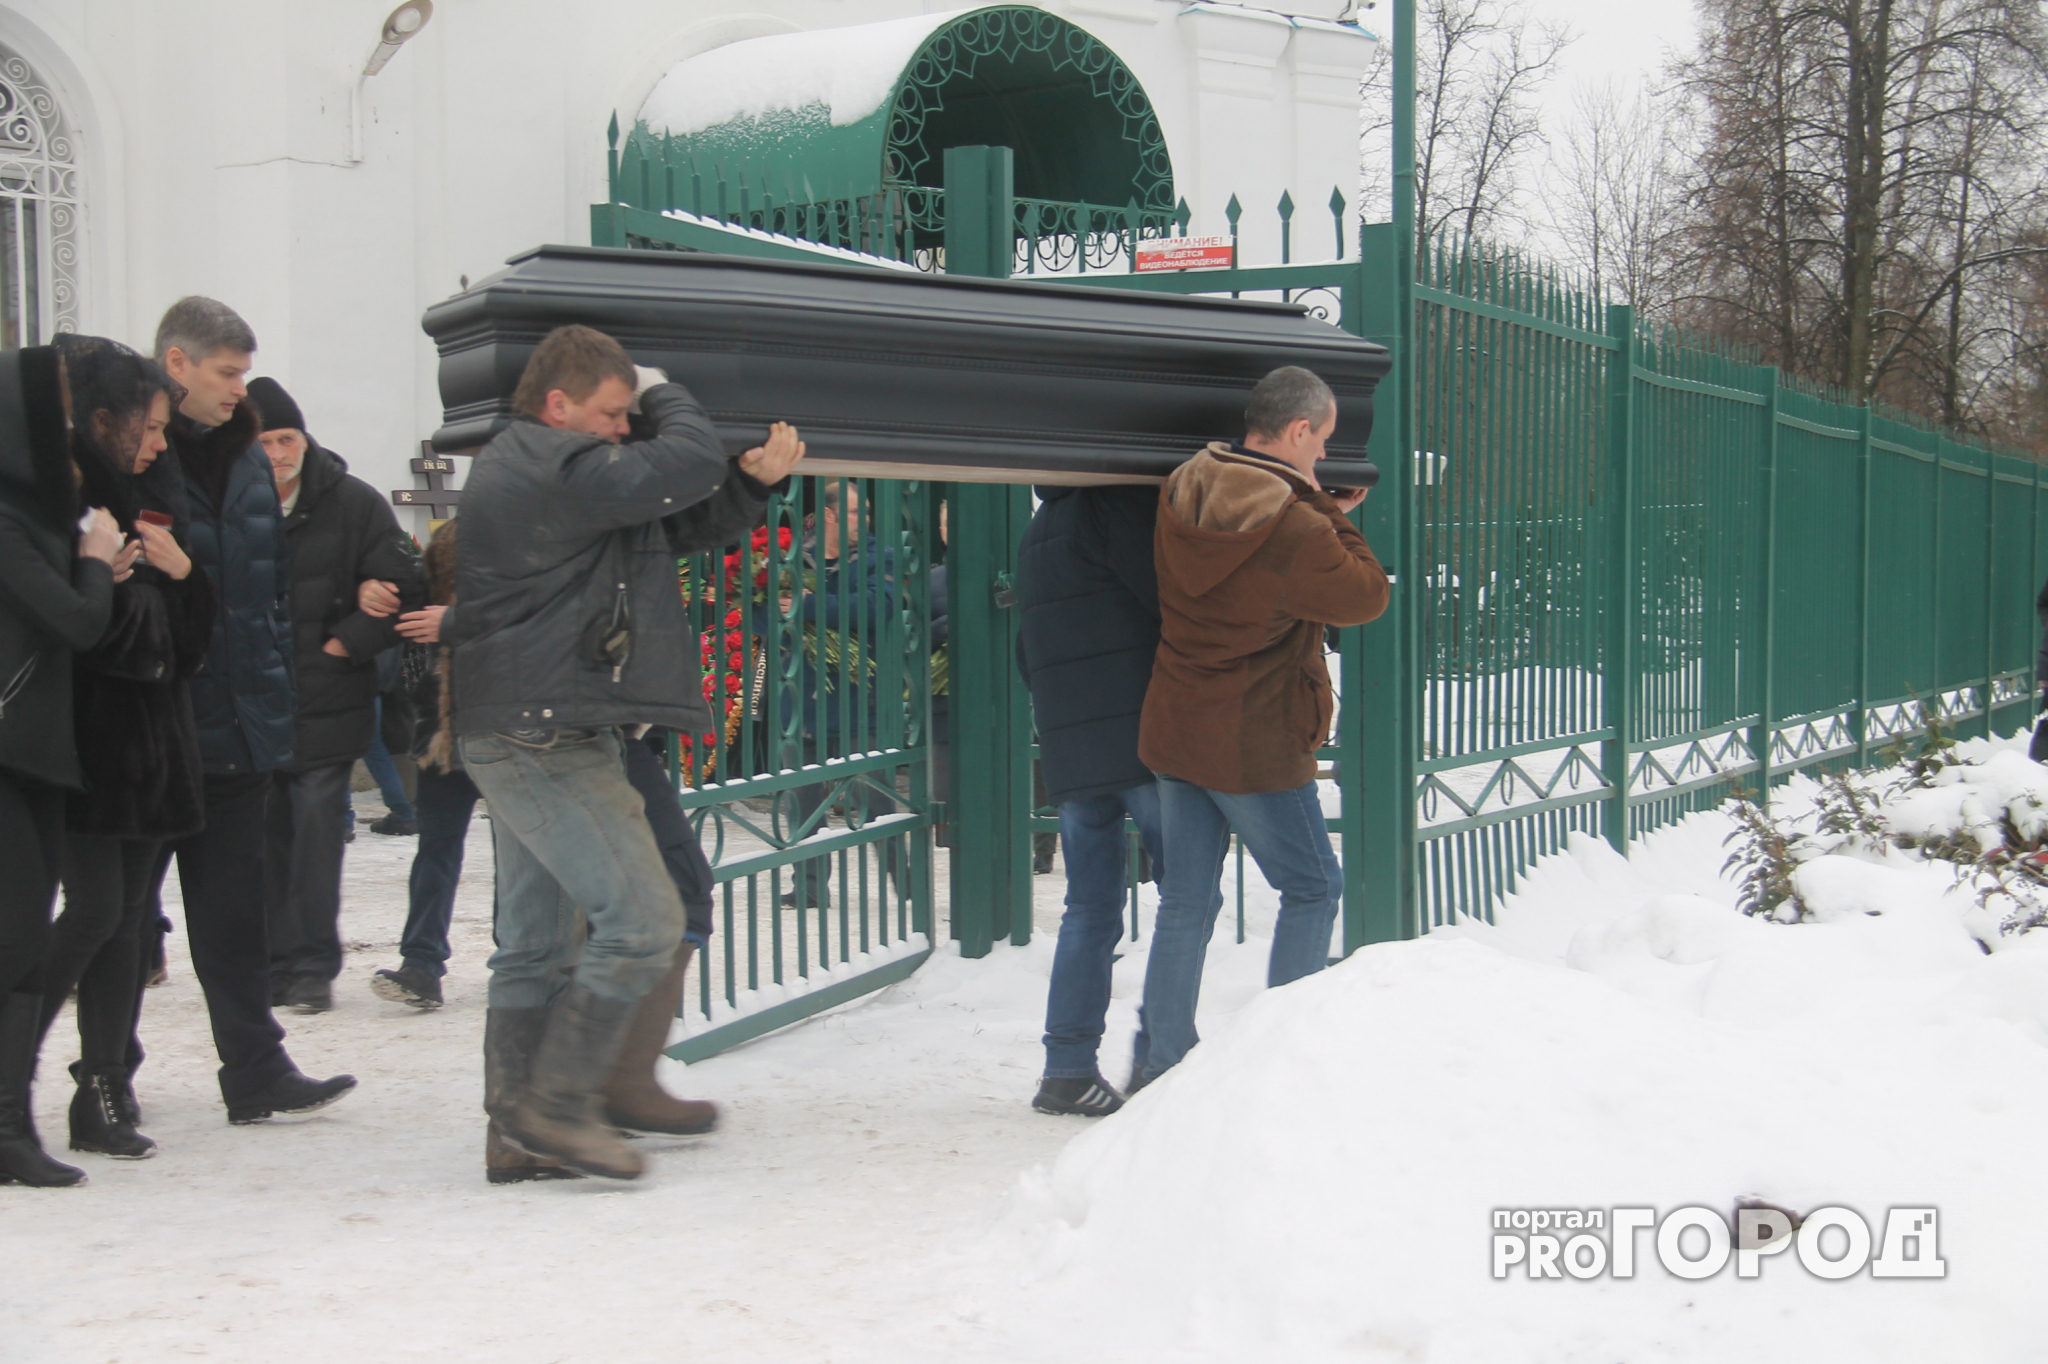 За информацию об убитом ярославце родственники заплатят миллион рублей